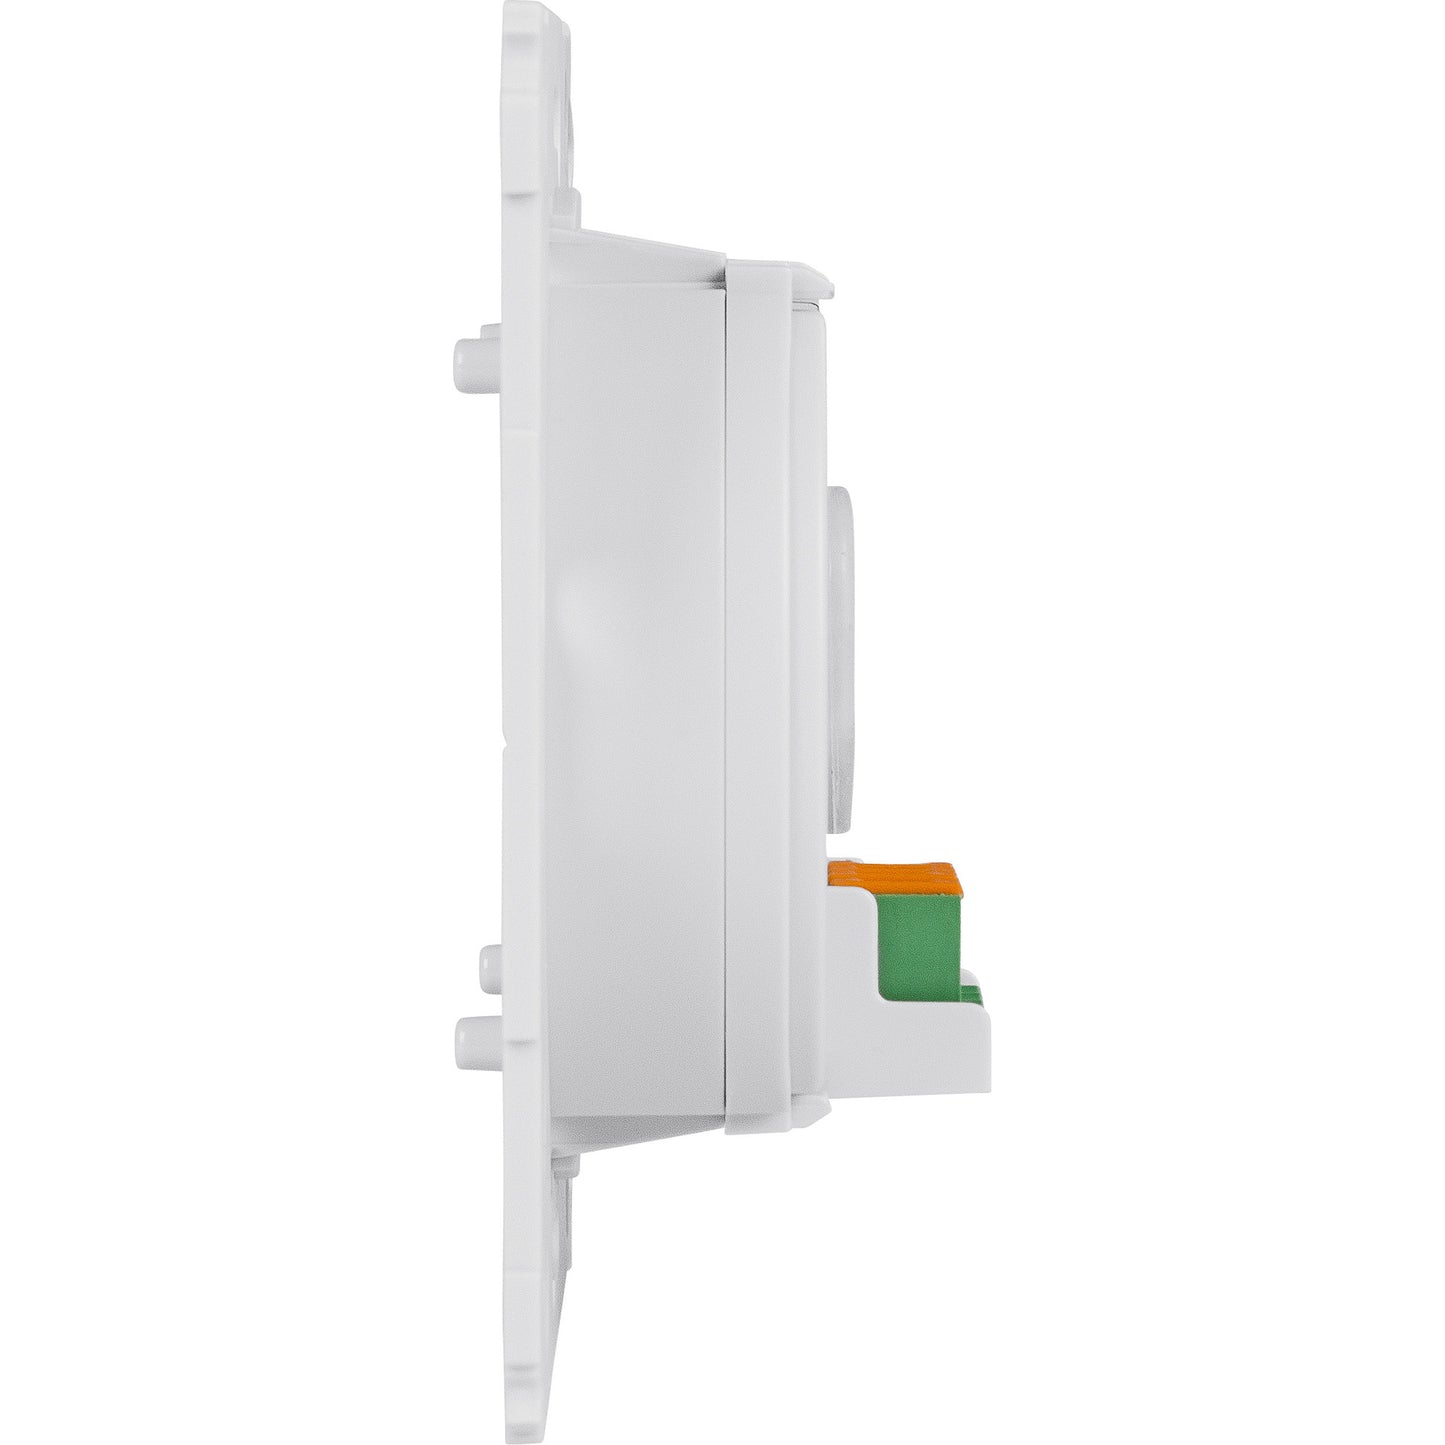 Homematic IP Wired Smart Home Wandtaster für Markenschalter HmIPW-BRC2, 2-fach 6 x HmIPW-WTH Sparset